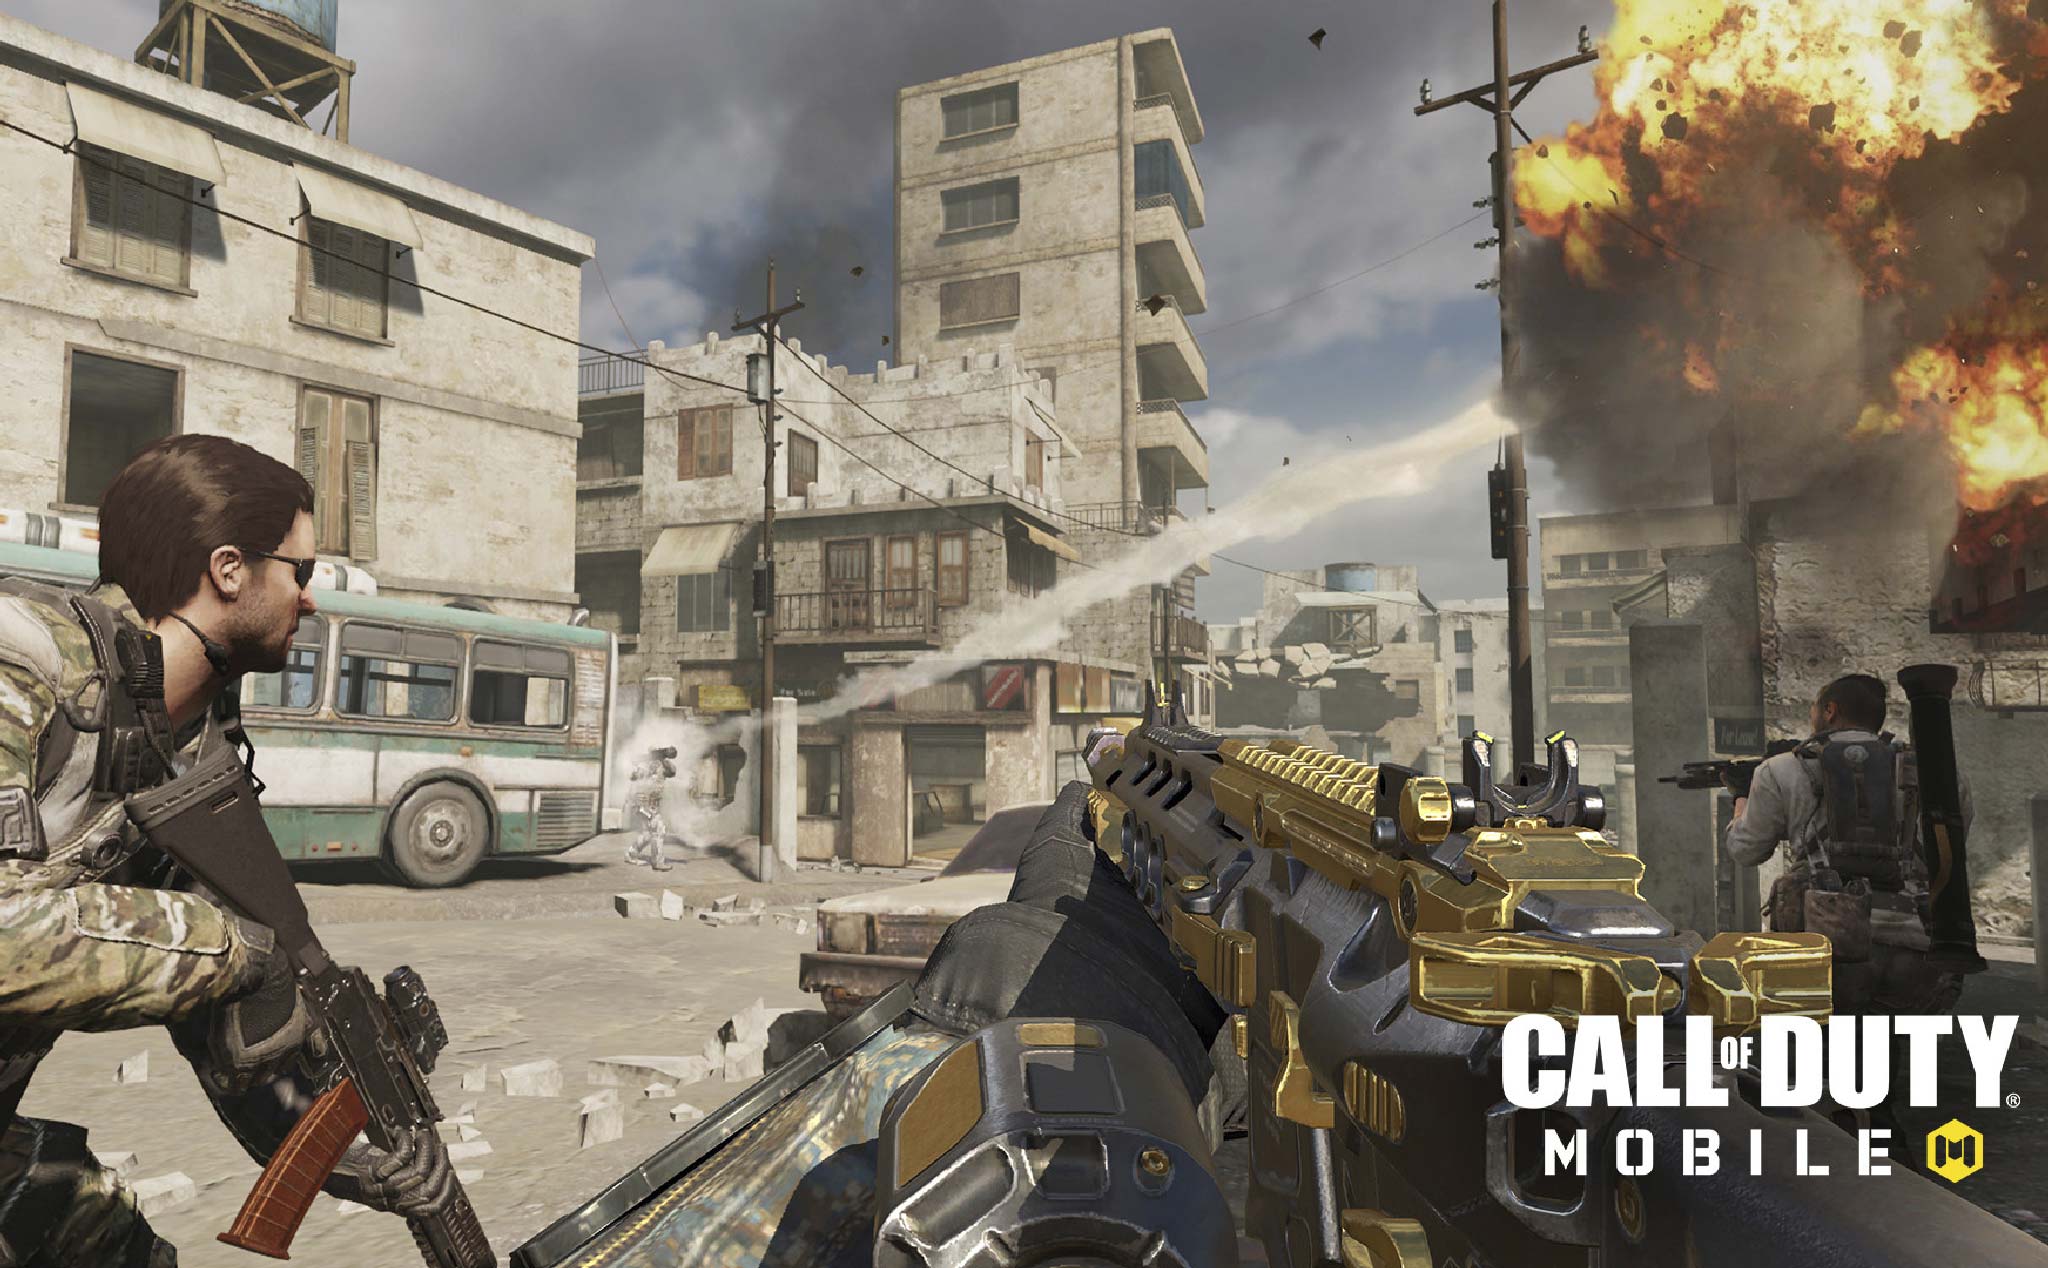 Giải đấu "Call of Duty: Mobile" khởi tranh từ ngày 30/4, tổng giải thưởng lên đến 1 triệu đô la Mỹ